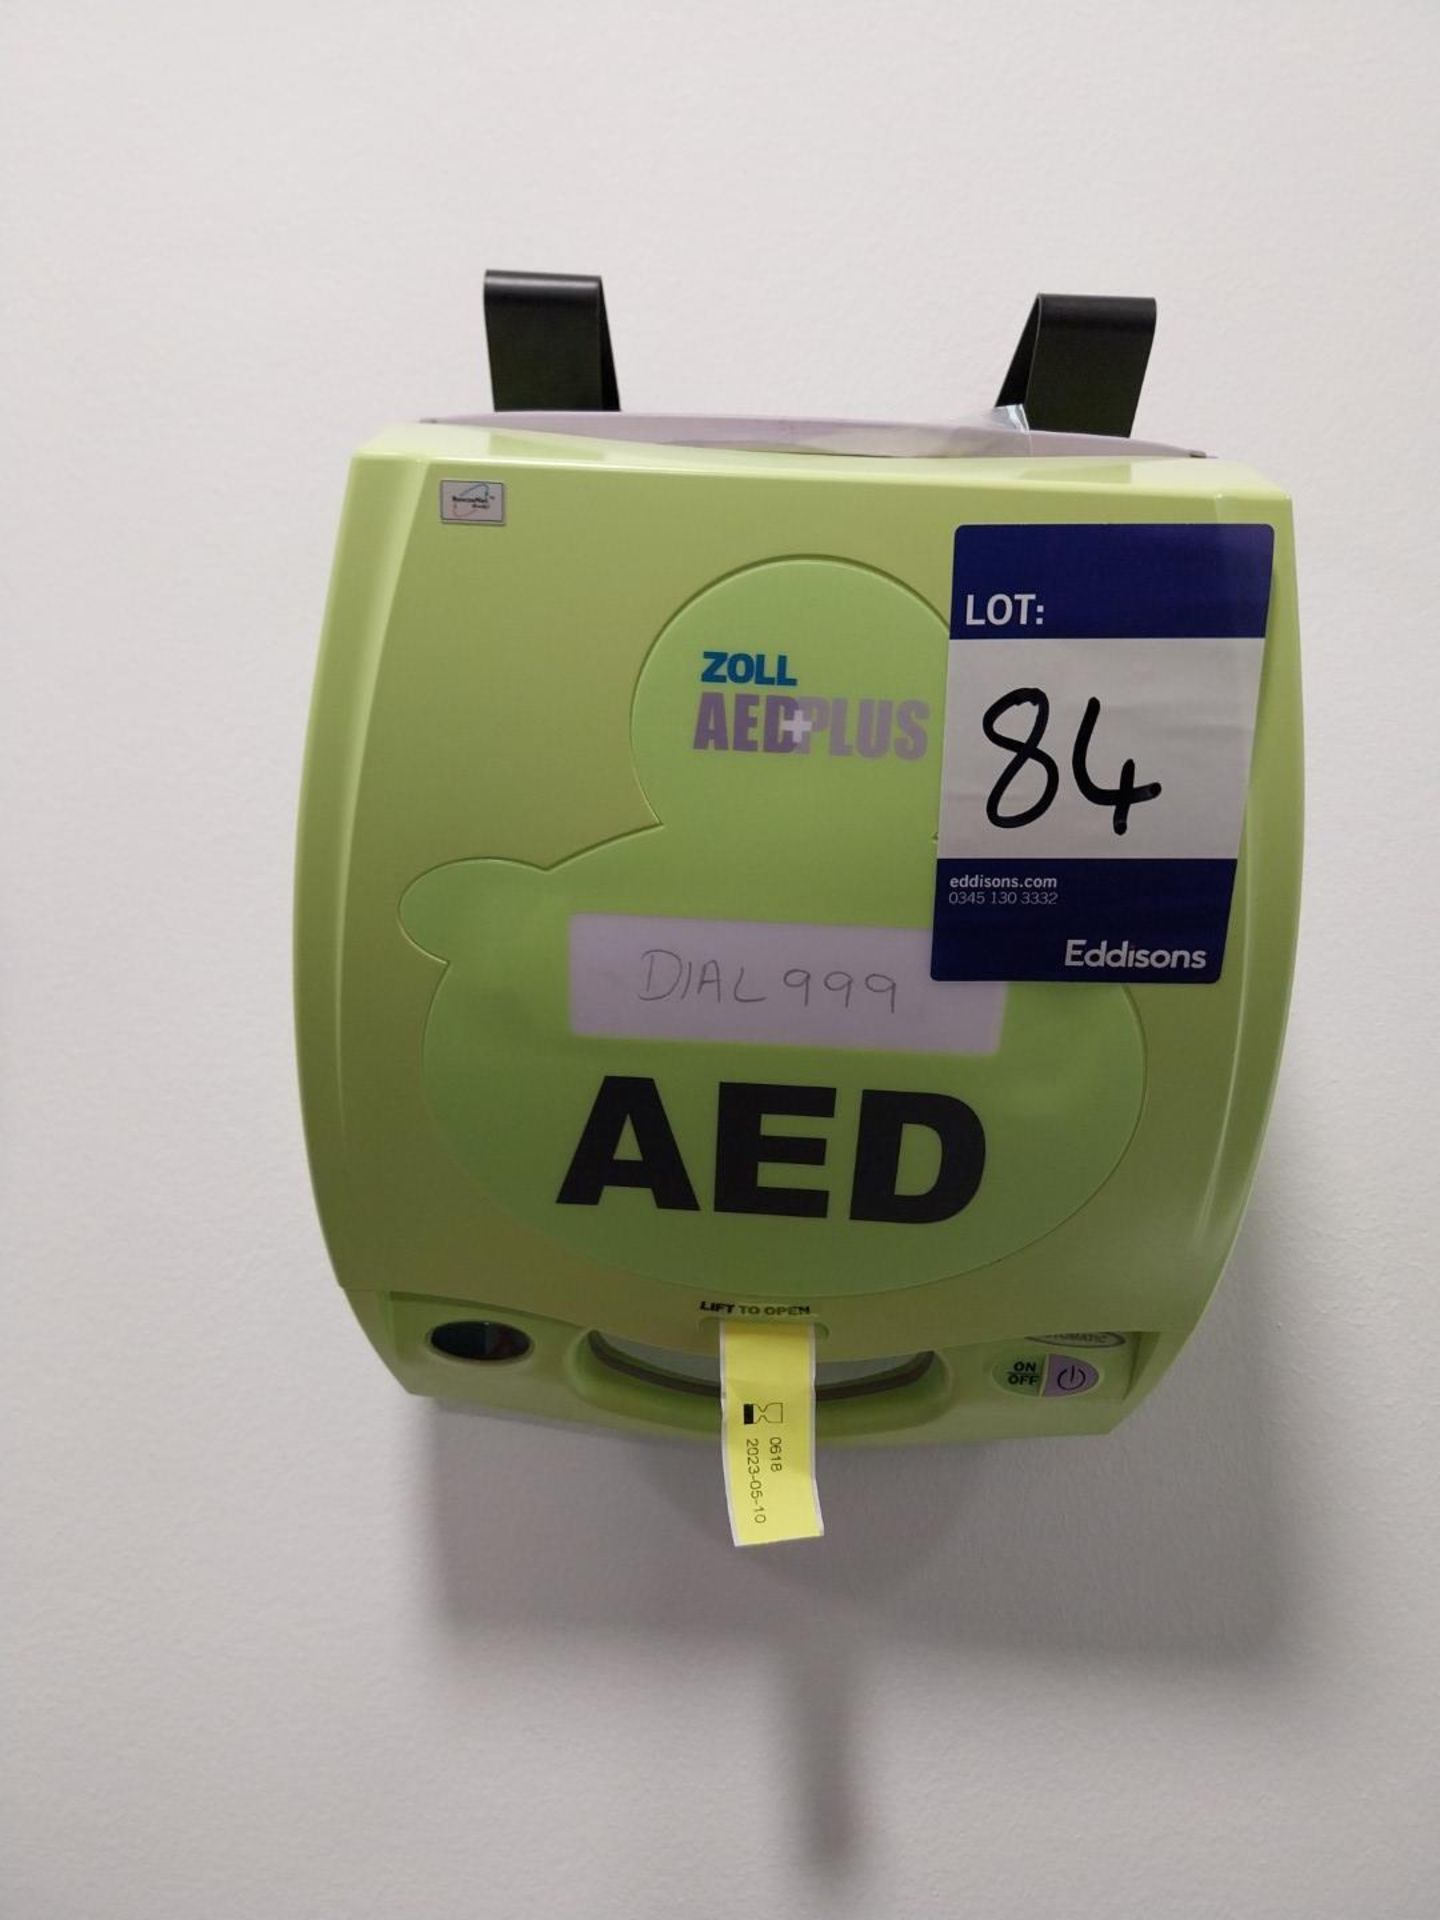 2011 AED Plus defibrillator